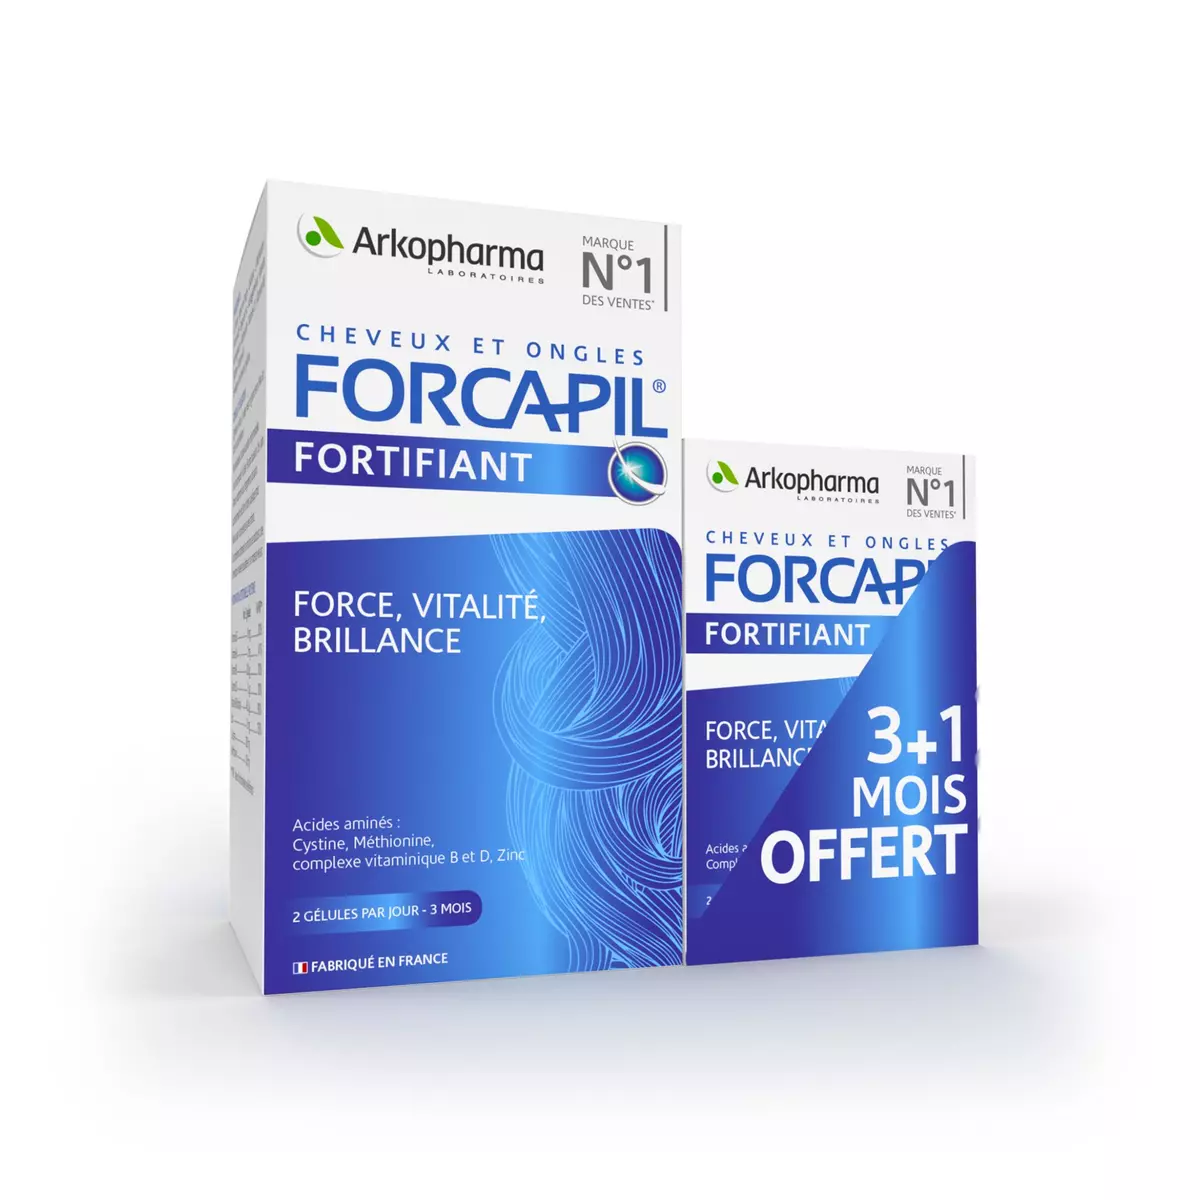 ARKOPHARMA Forcapil gélules formule fortifiante cheveux et ongles 240 pièces